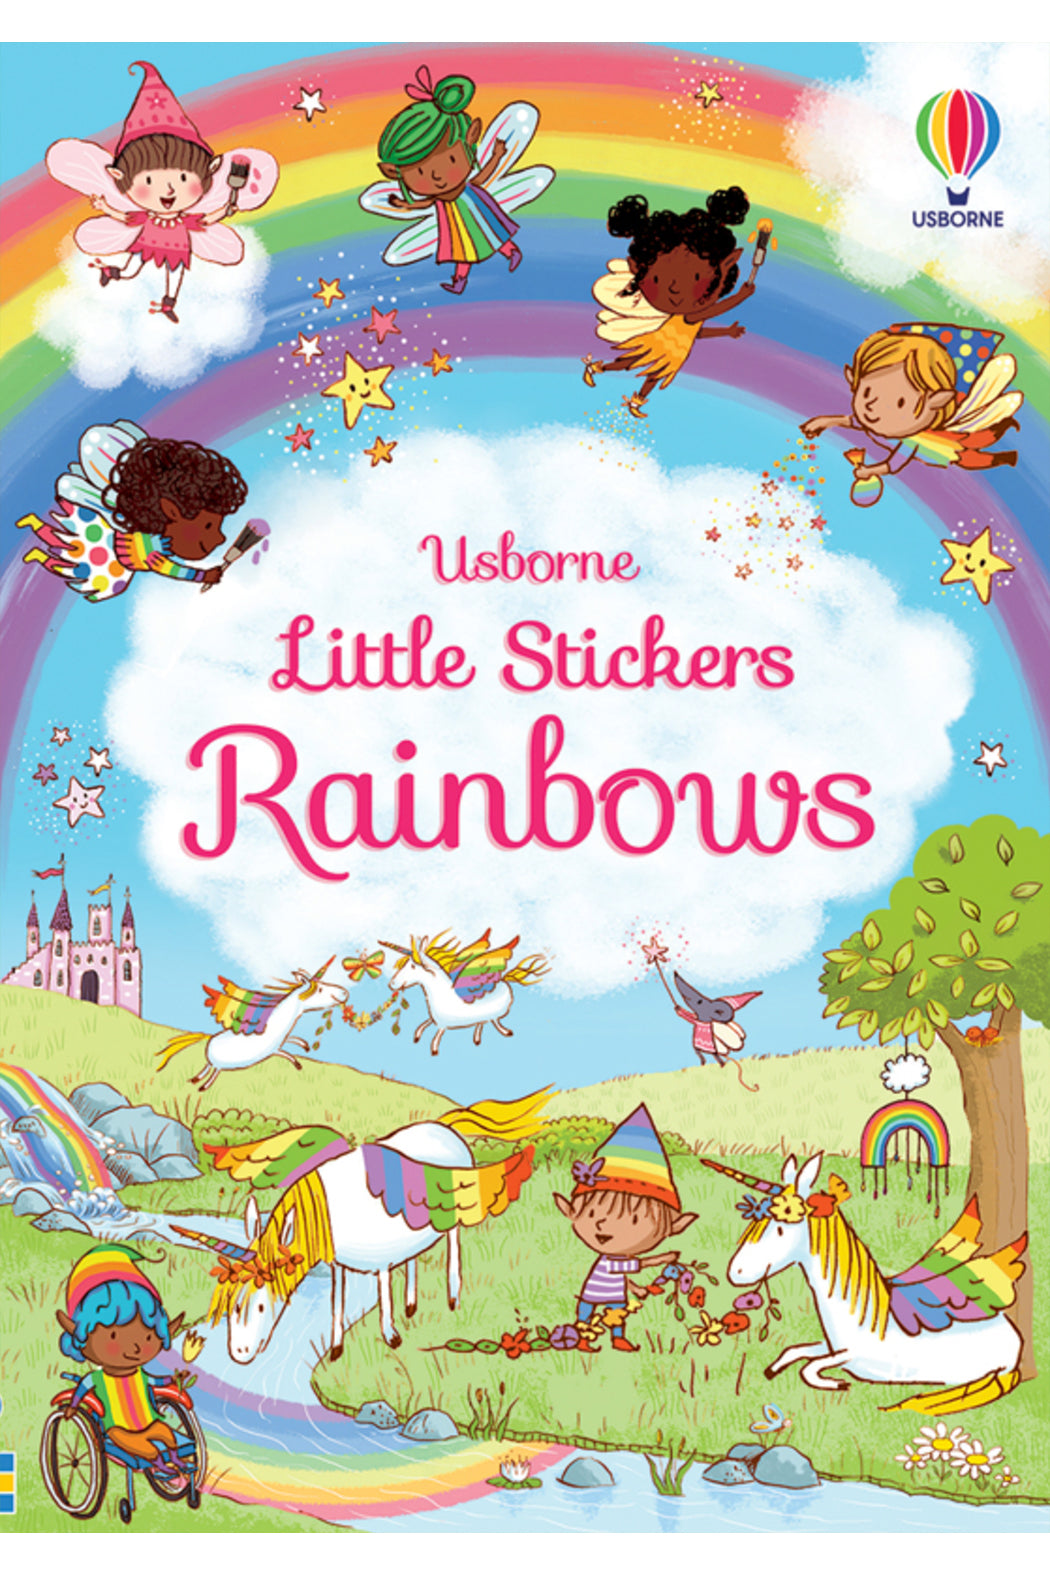 Usborne Little First Stickers Rainbows